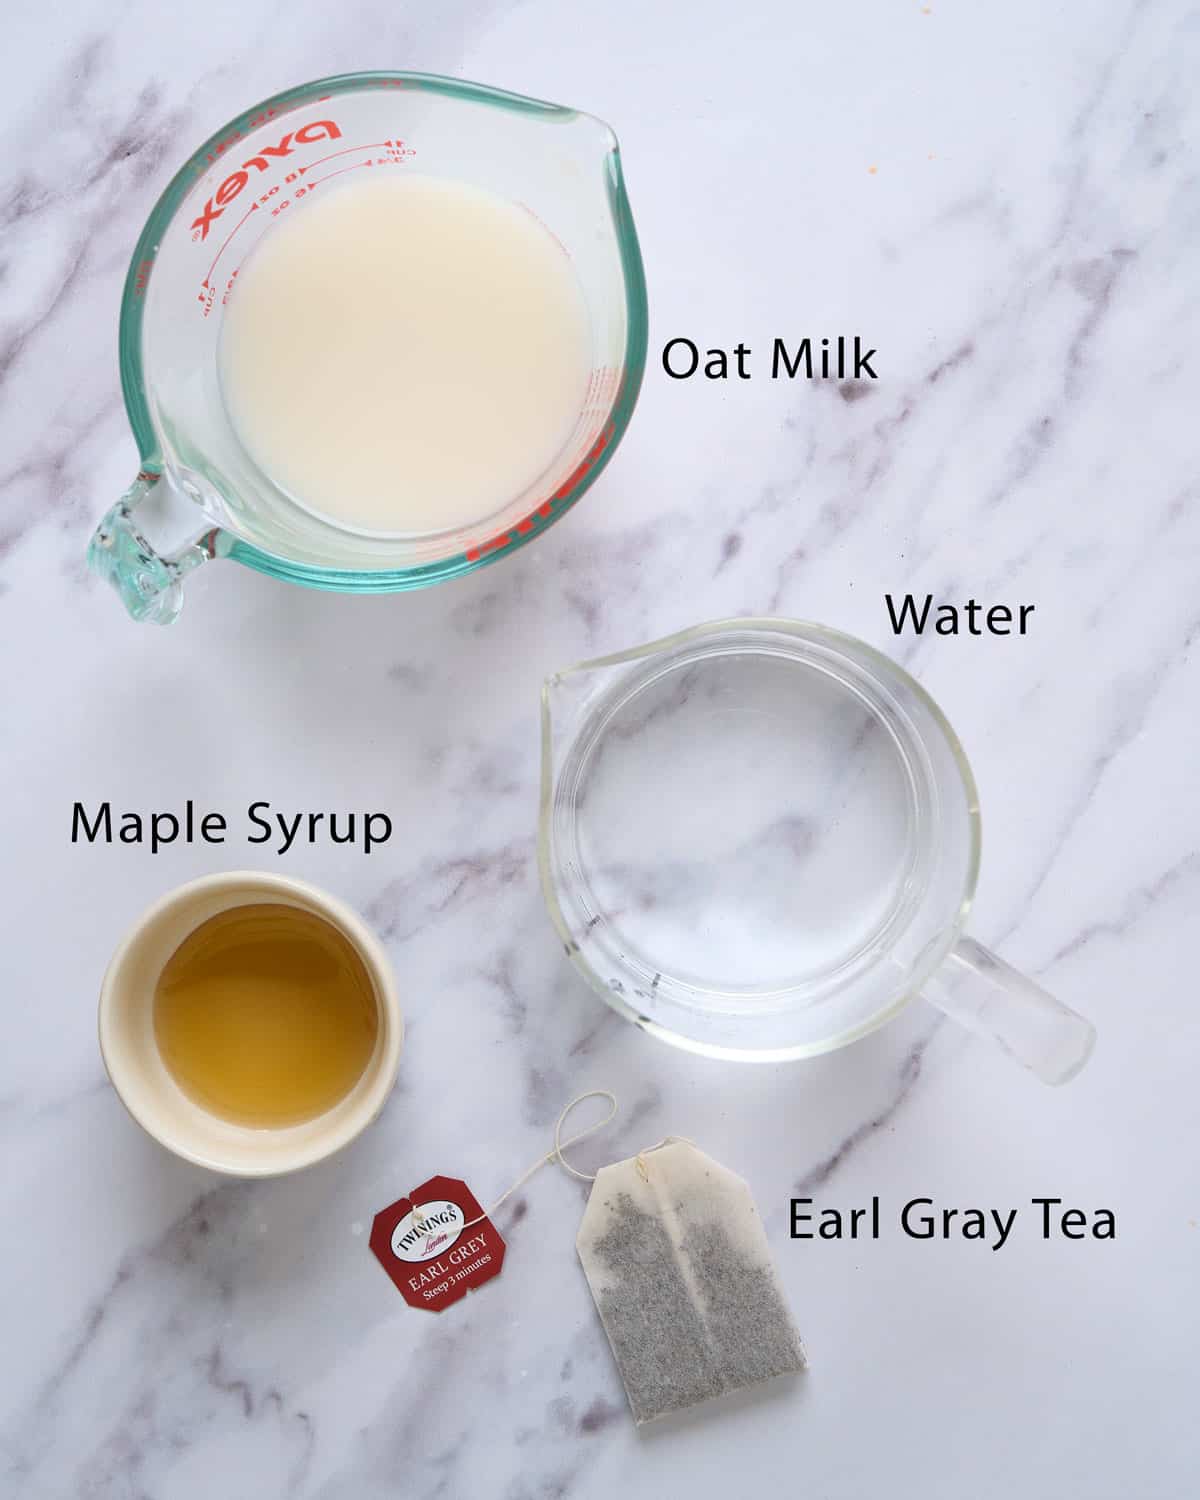 Oat milk London fog latte ingredients.